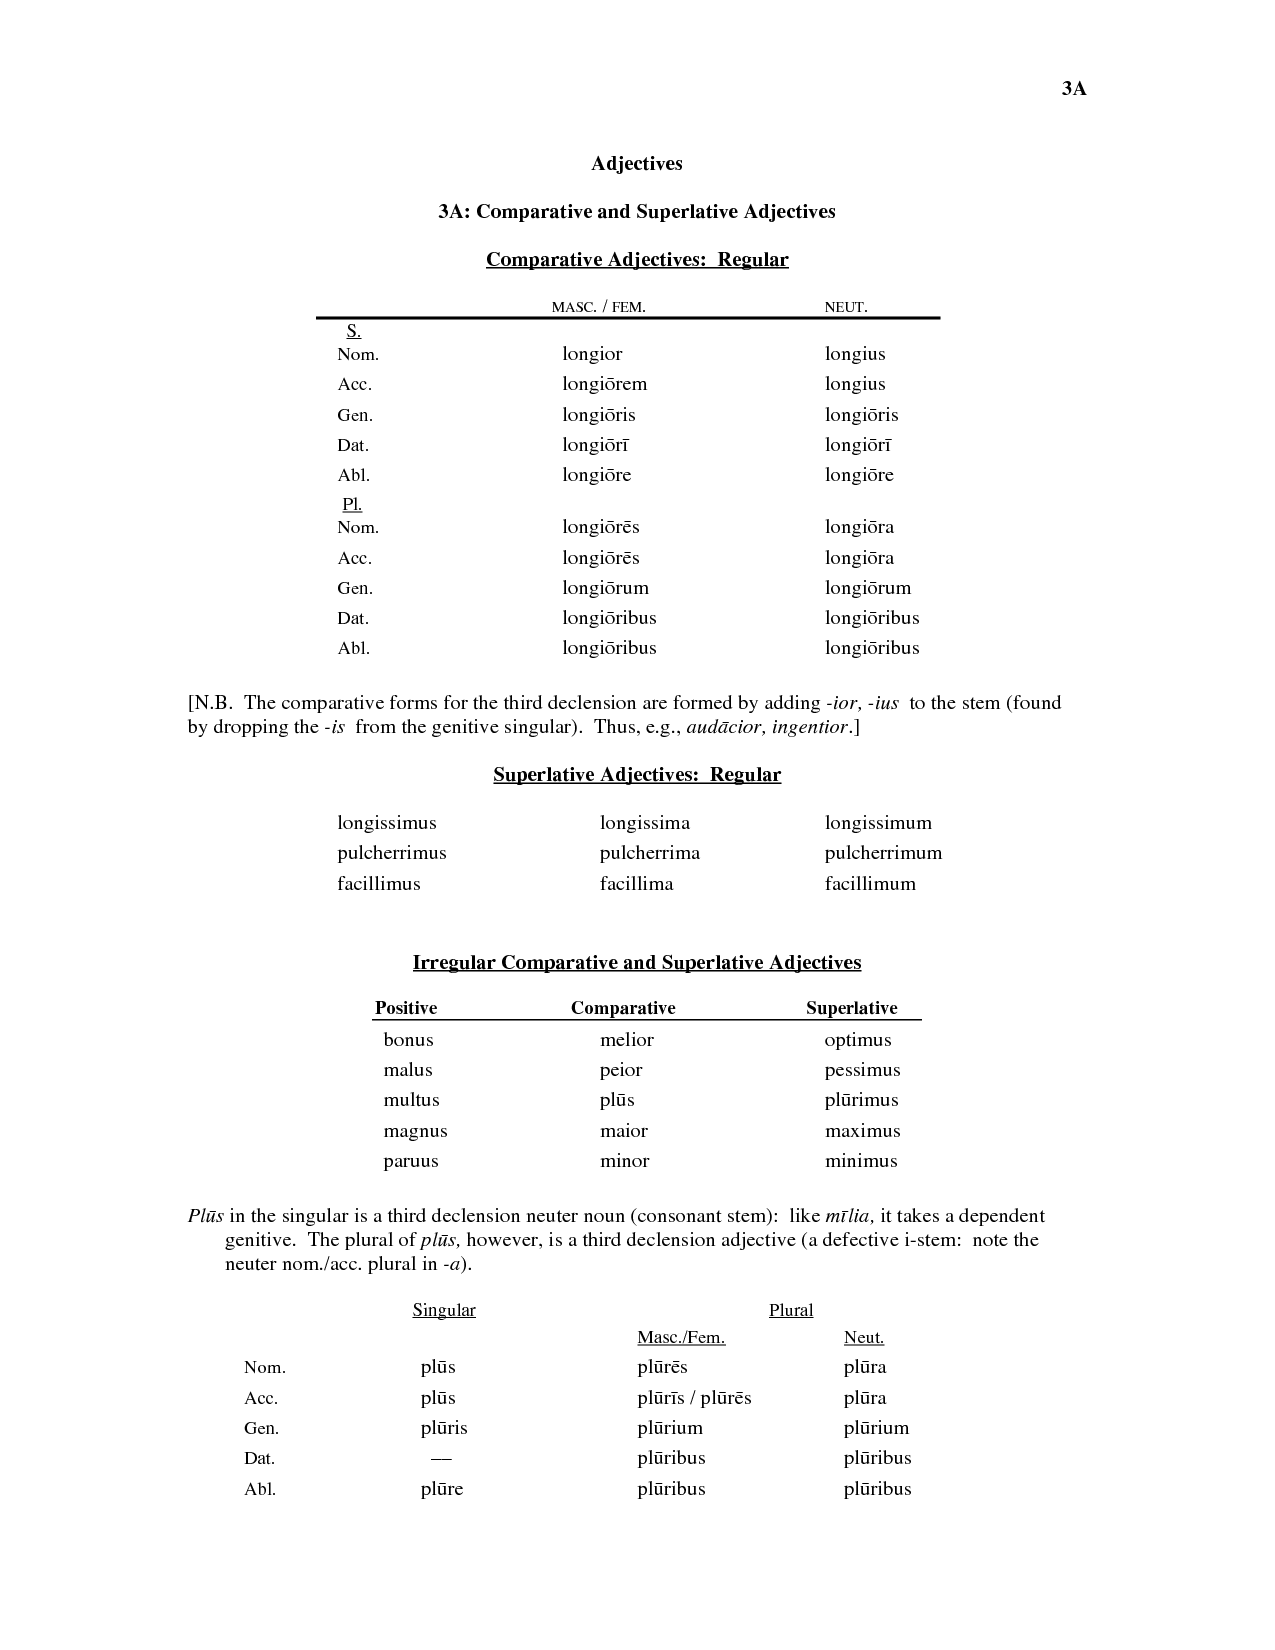 Adjectives Comparative Superlative Worksheet Image